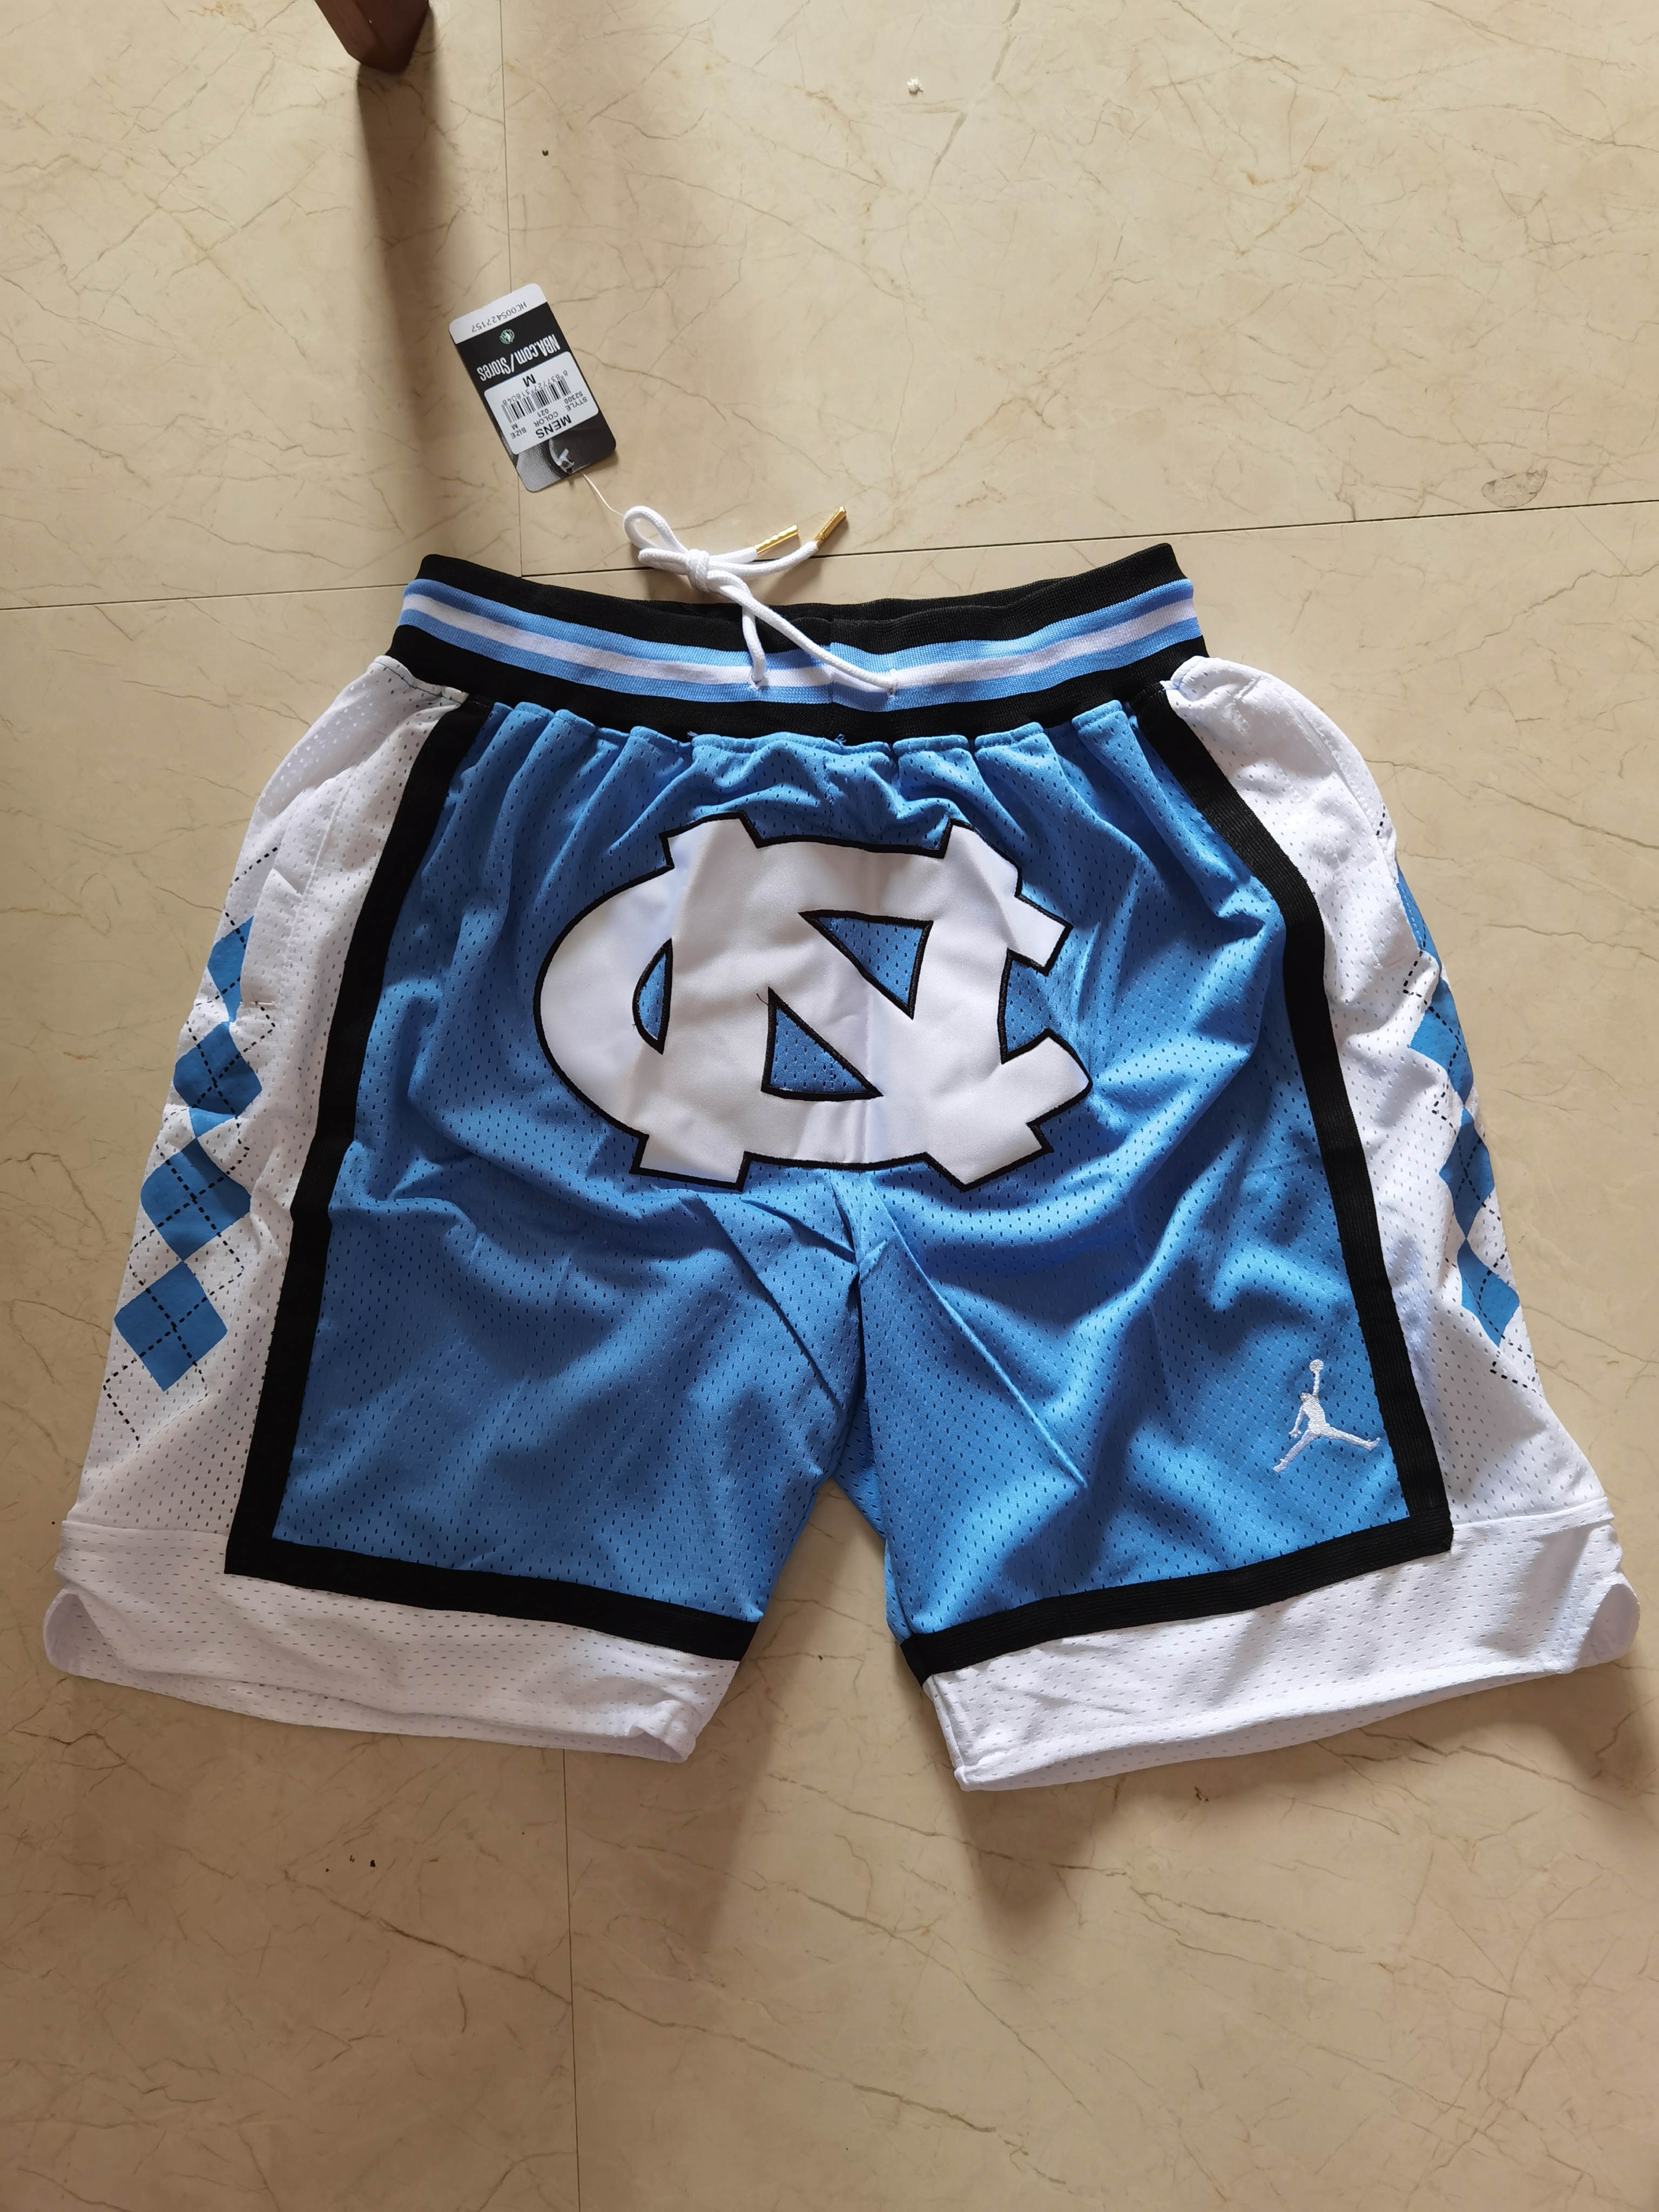 2020 Men North Carolina Tar Heels blue shorts